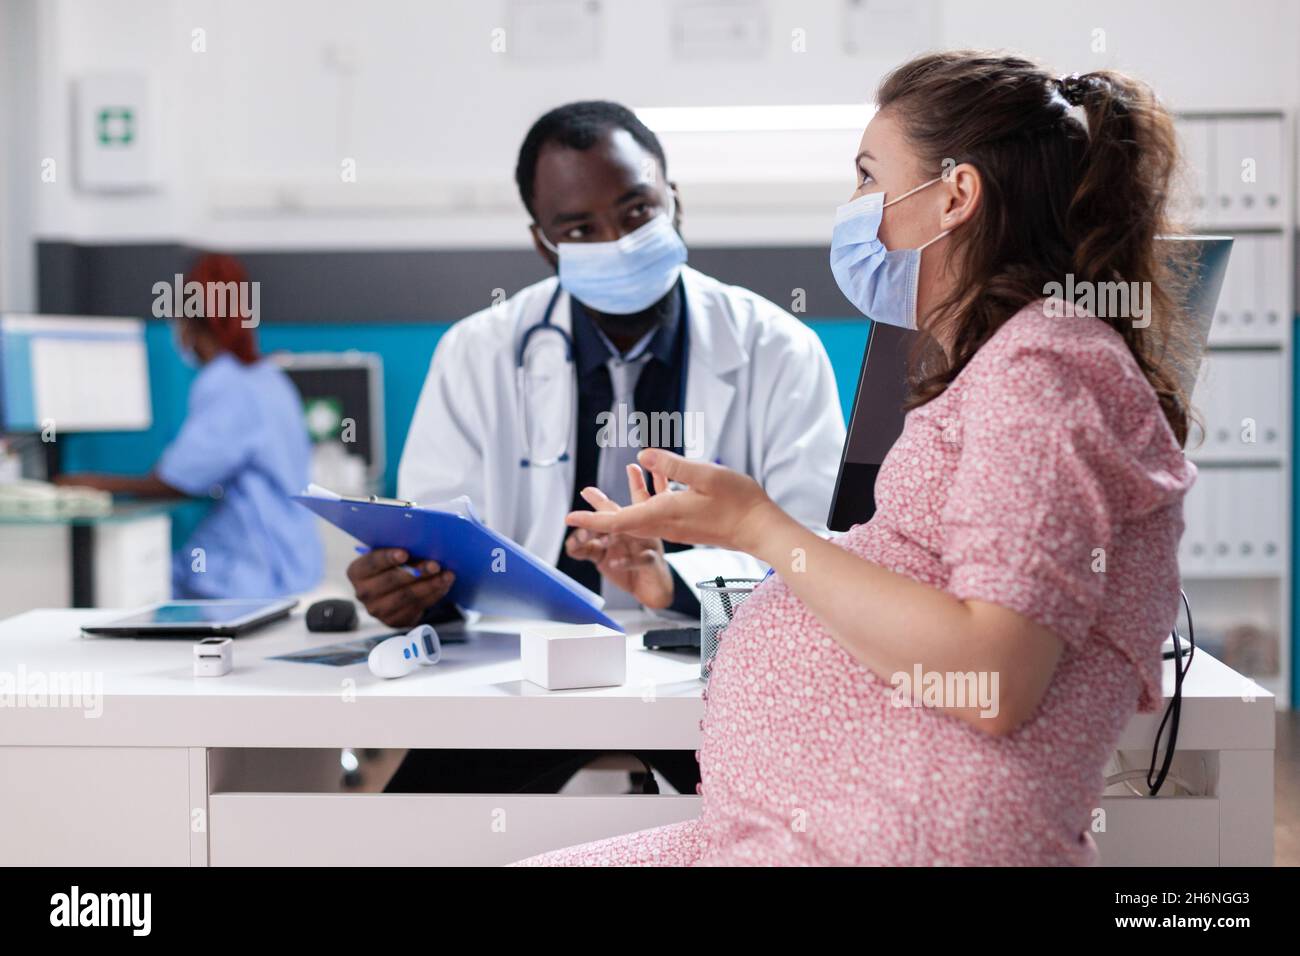 Frau, die ein Kind erwartet und mit einem Arzt über Schwangerschaft und Gesundheitsversorgung diskutiert. Hausarzt, der während einer Coronavirus-Pandemie Schwangeren medizinische Ratschläge gibt Stockfoto